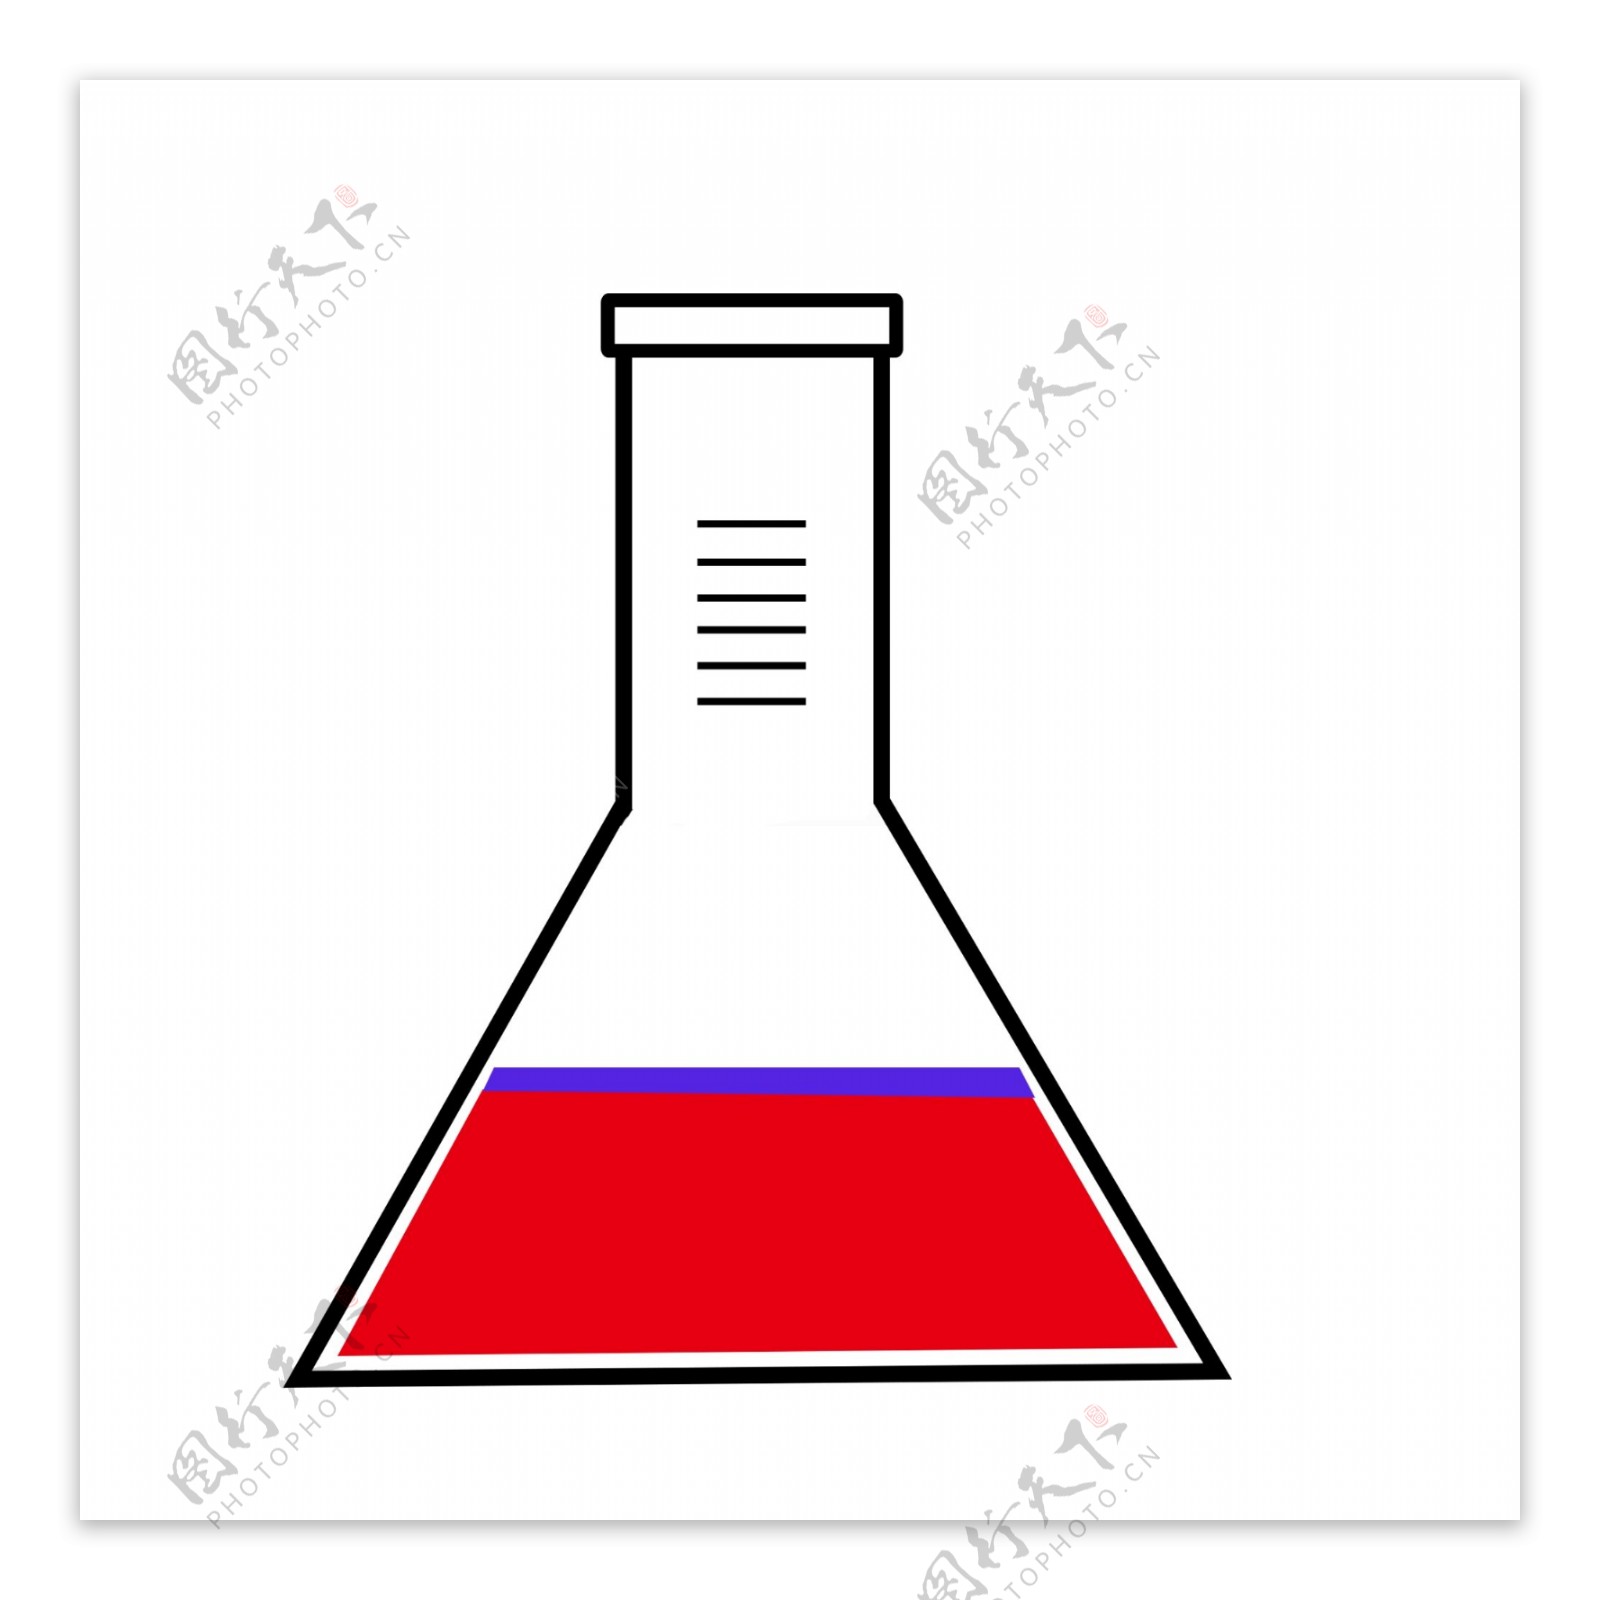 化学玻璃容器和液体